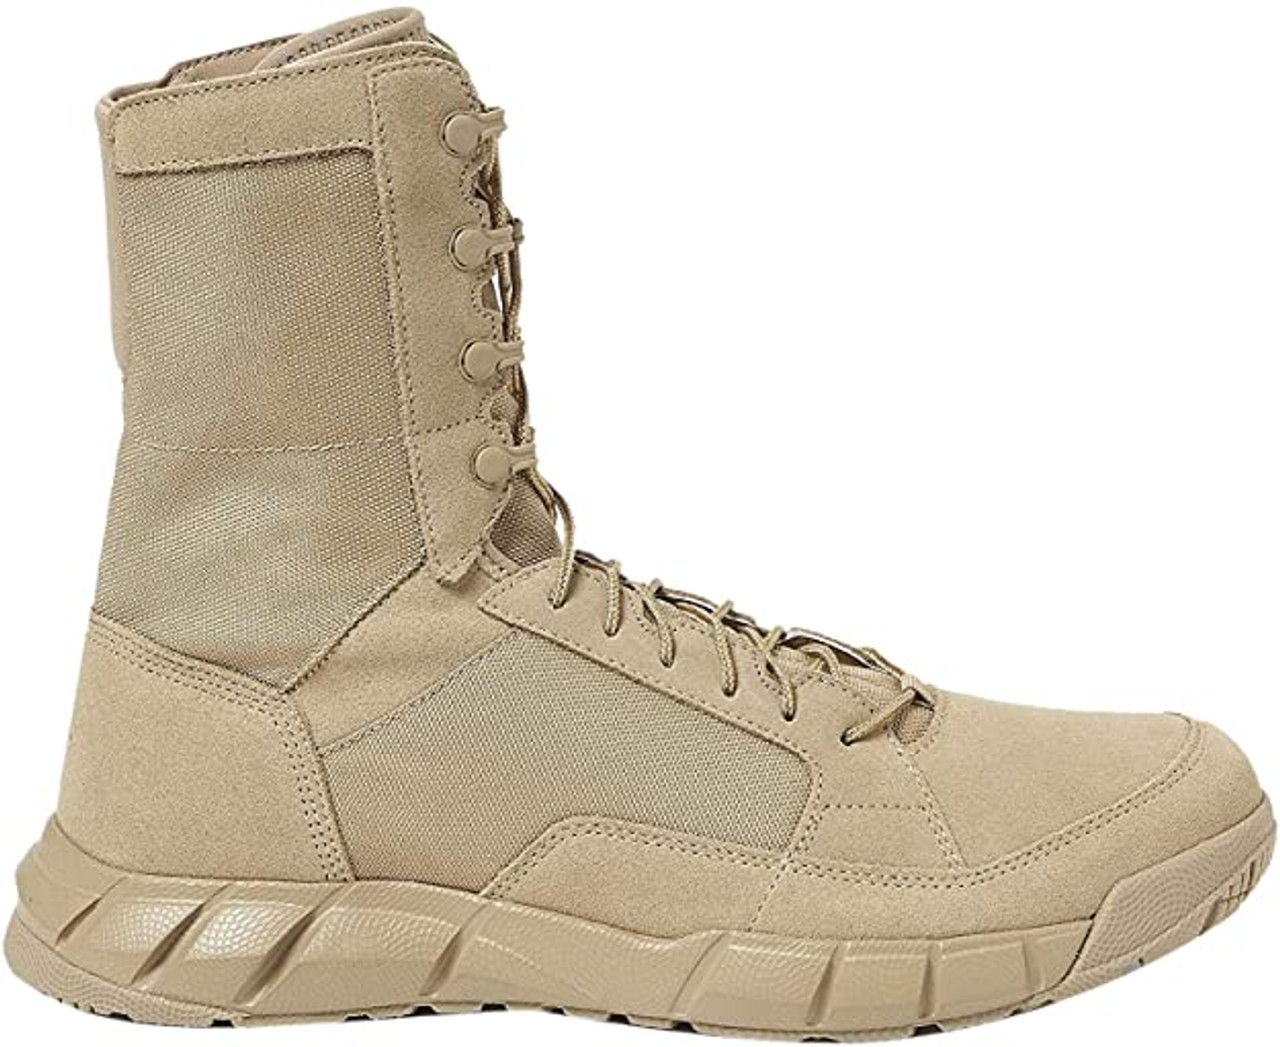 Oakley Men's Light Assault 2 Boots Desert Size 10.5